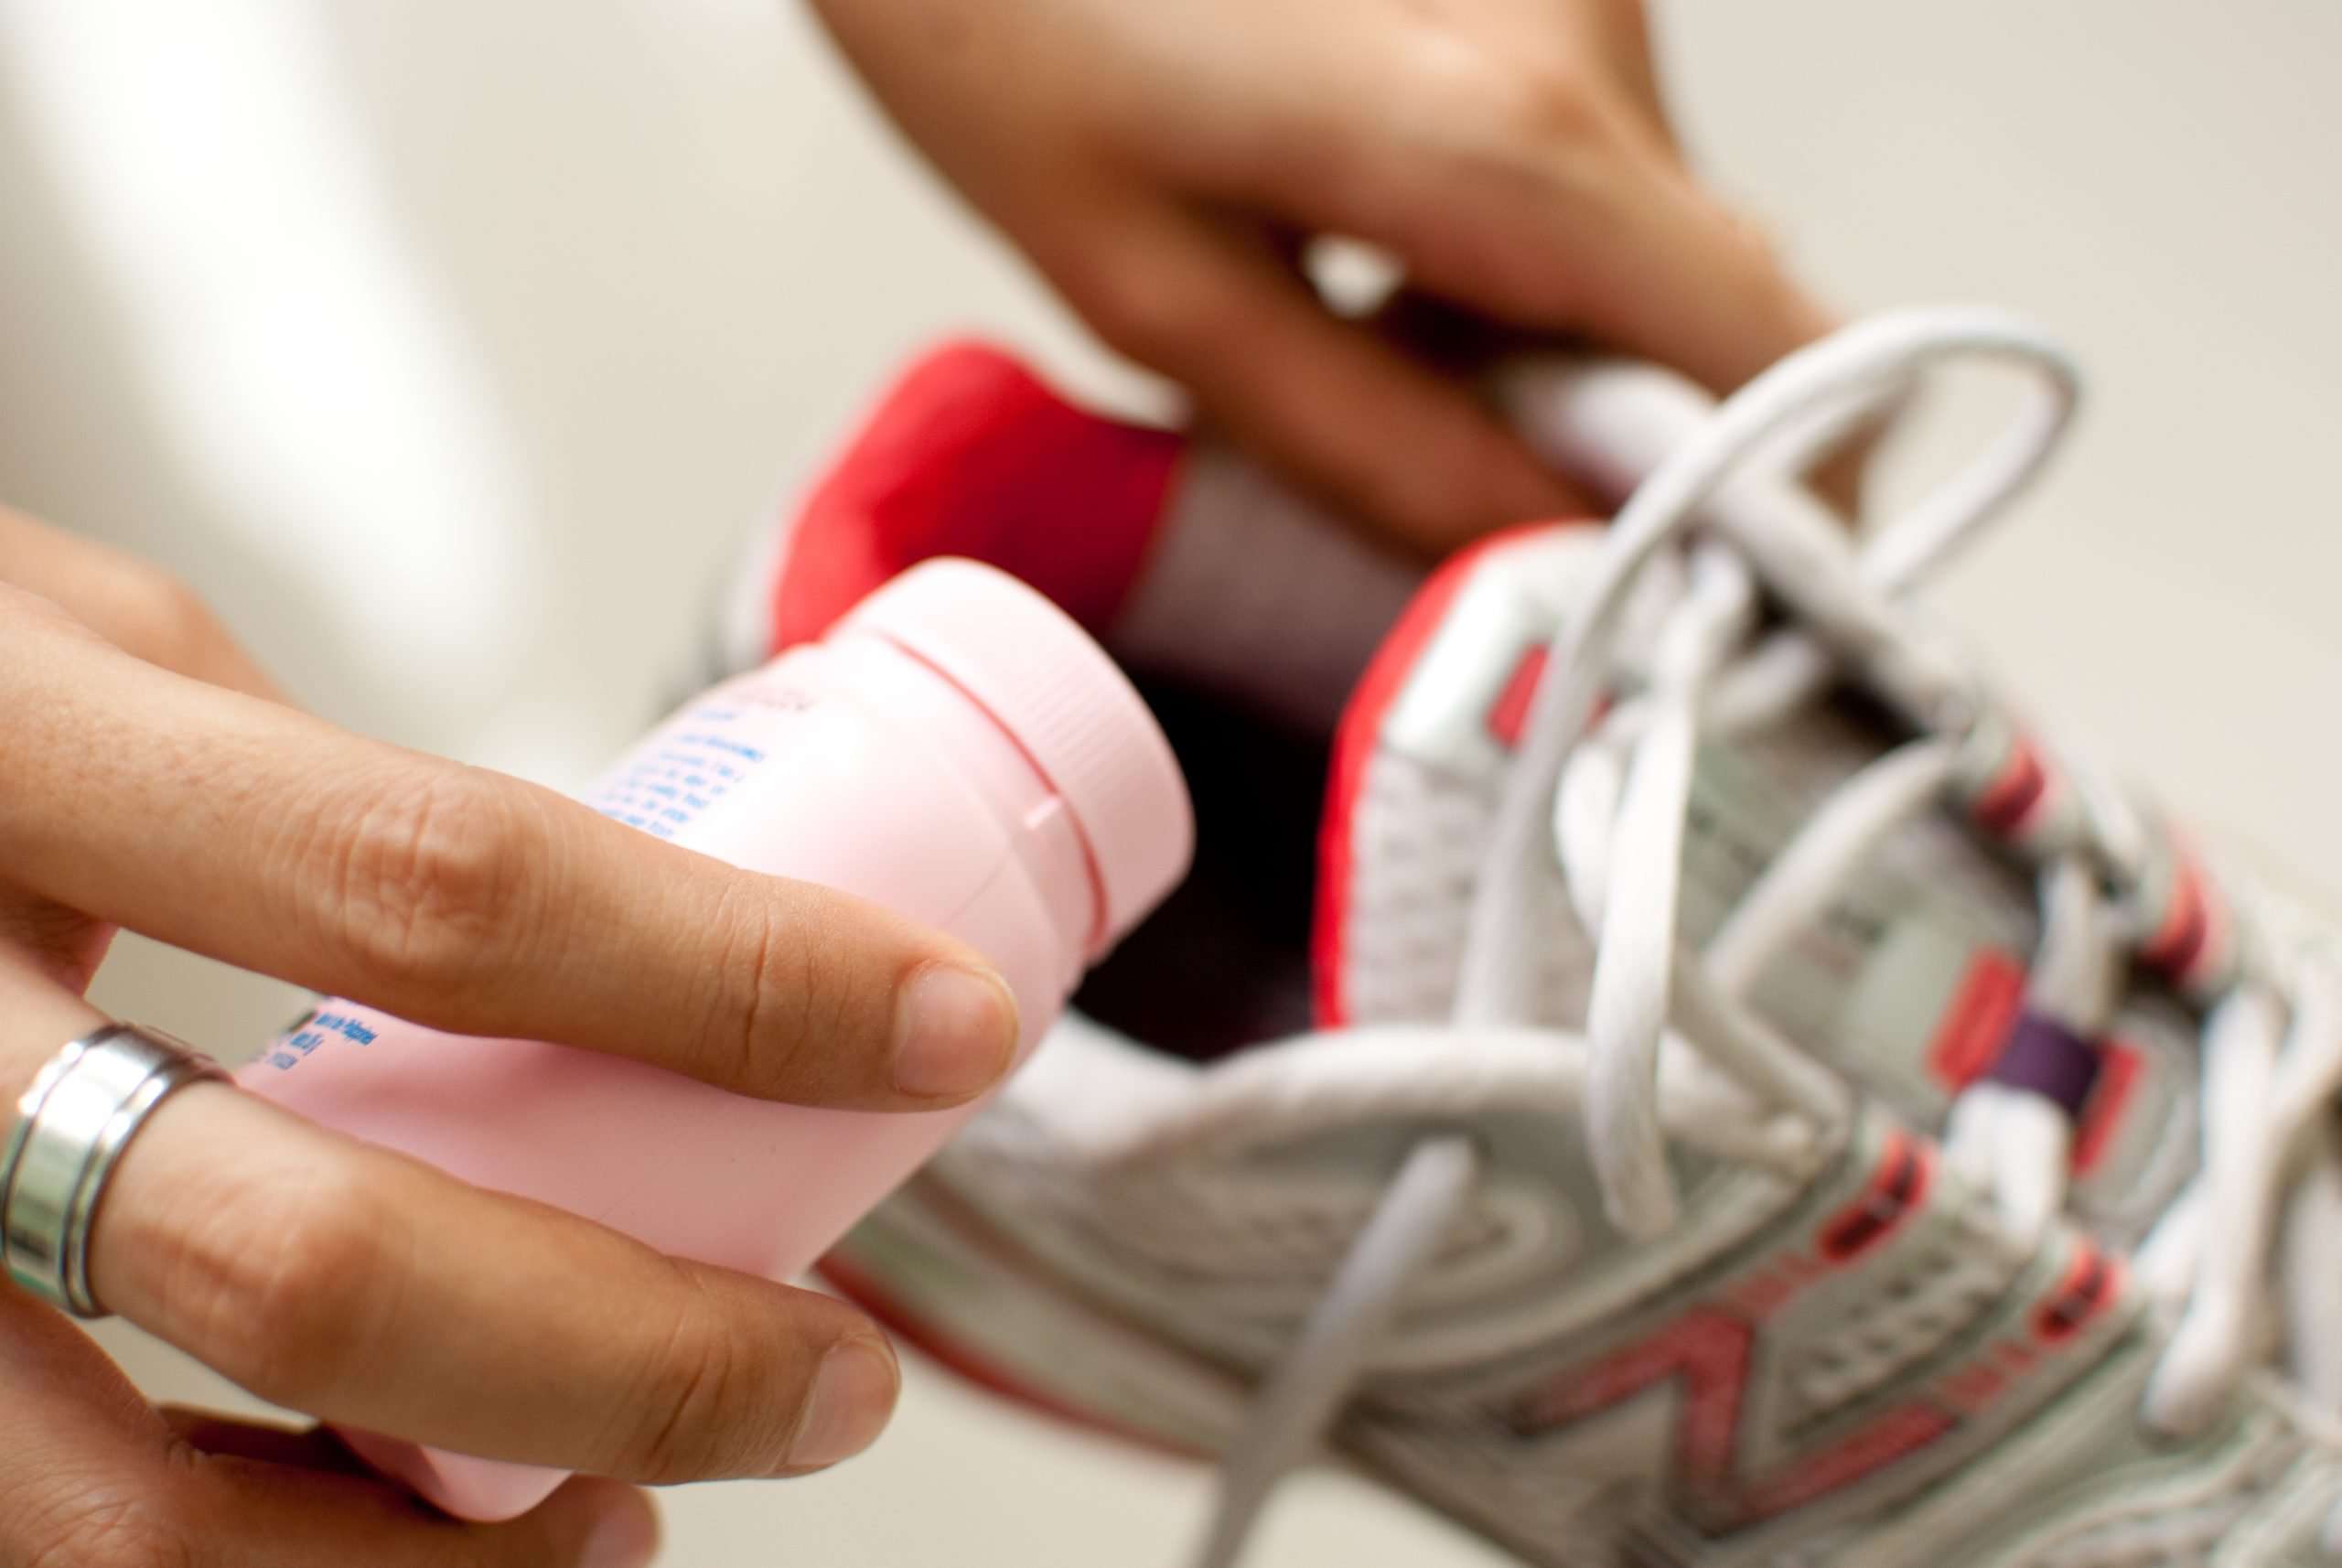 3 Simple Ways to Get Rid of Foot Odor